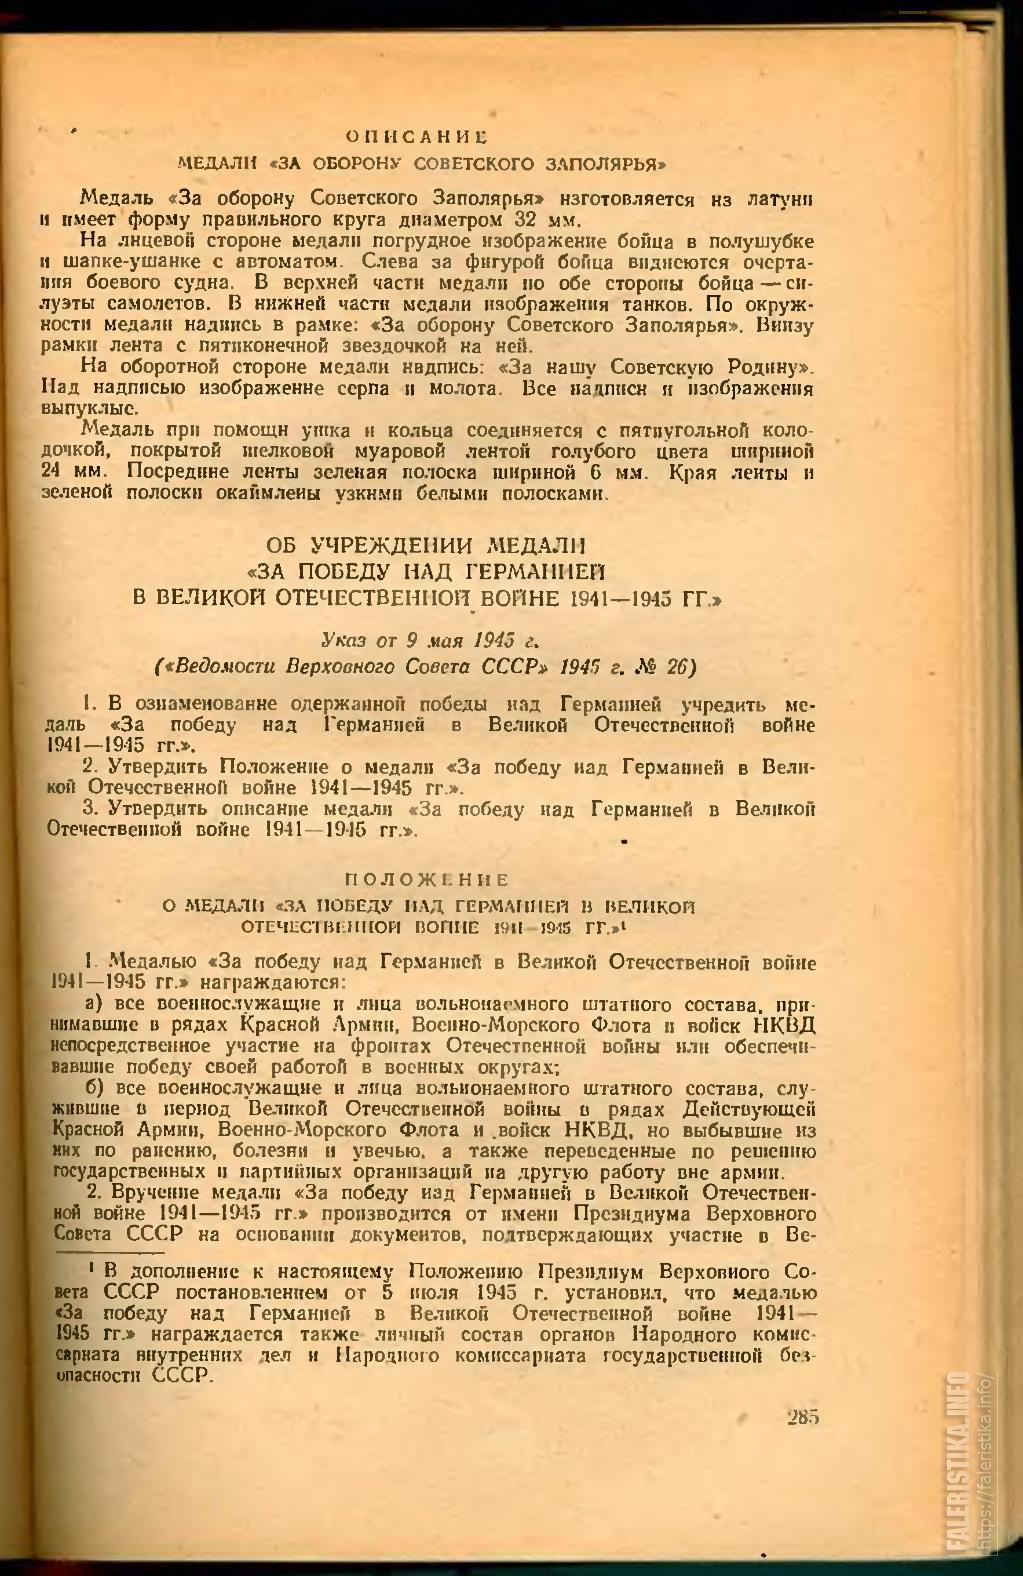 Sbornikzakonov1938-1956djvu.jpg